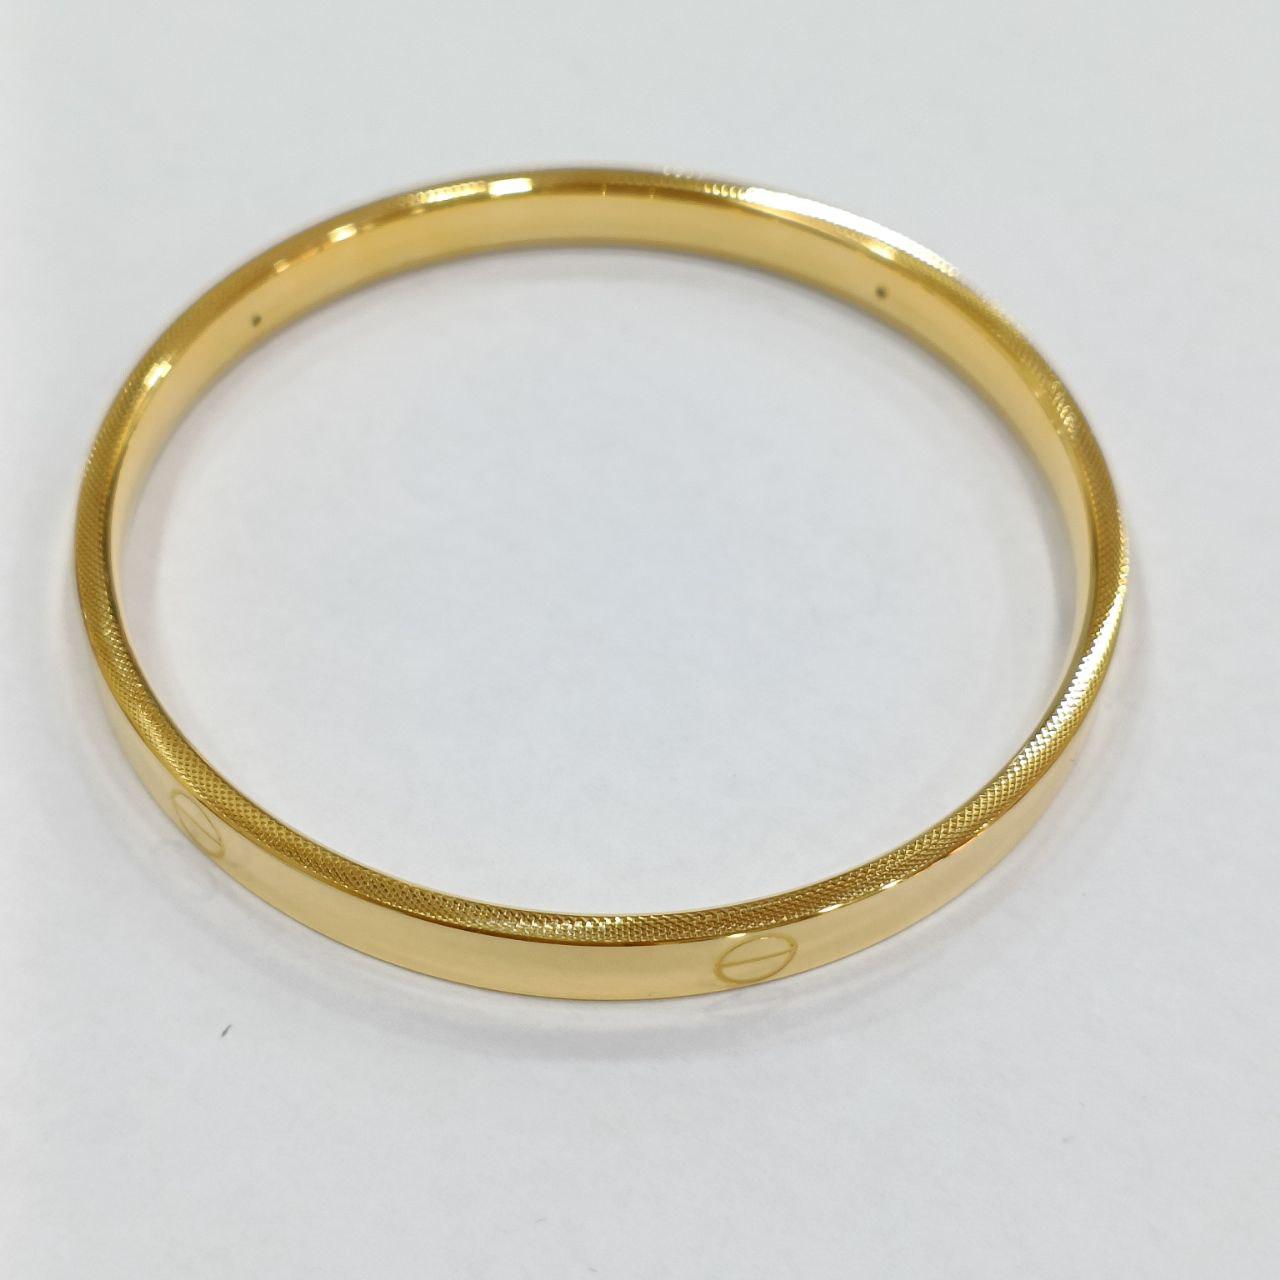 24K / 999 Gold C design no lock bangle-999 gold-Best Gold Shop